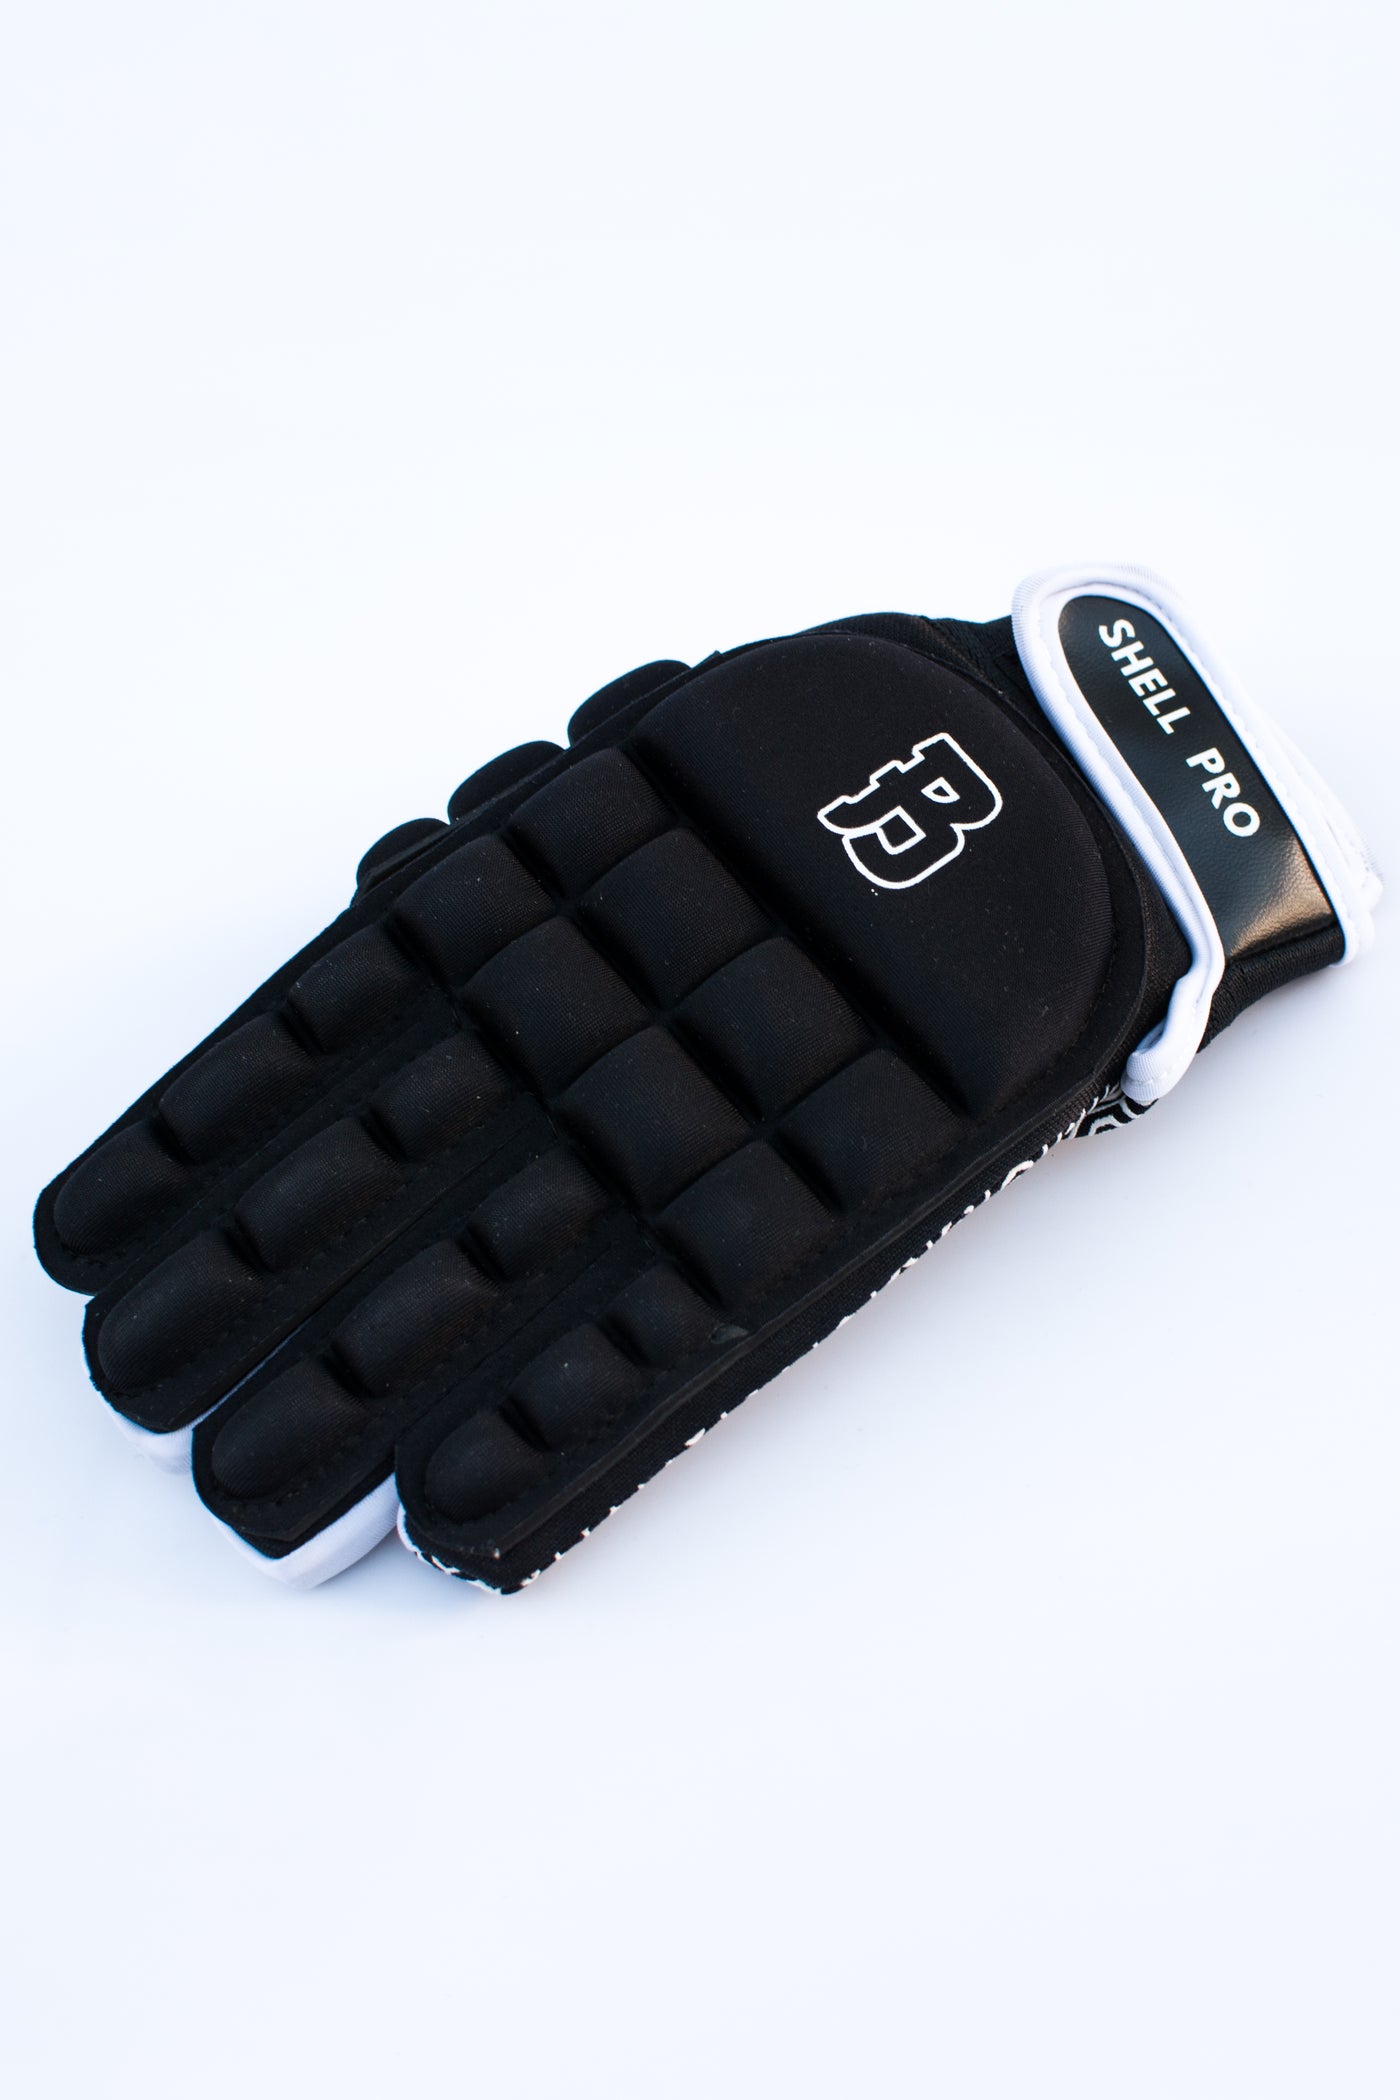 Shell Pro Glove